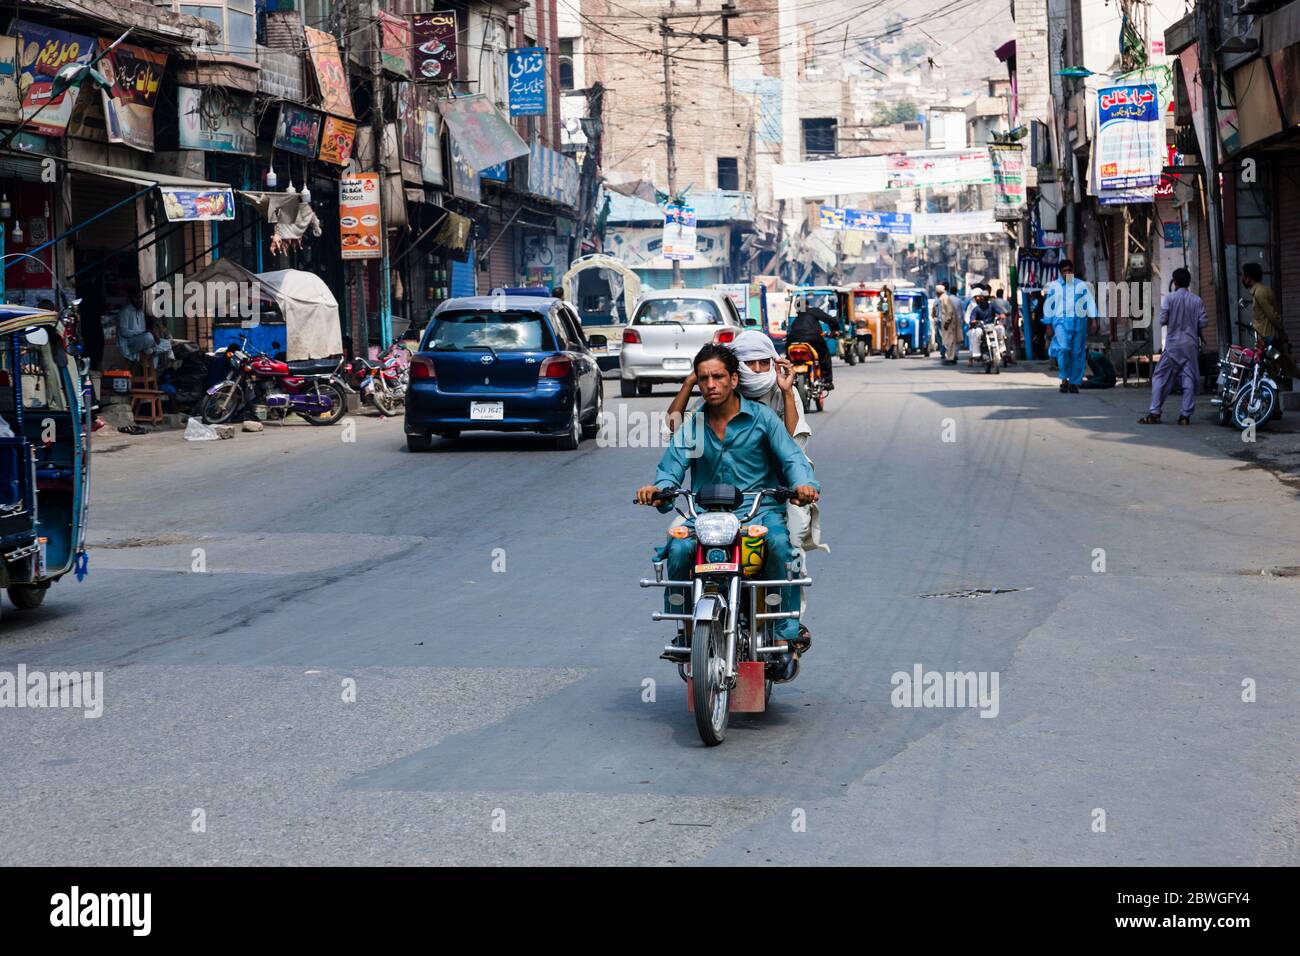 Main street, Mingora, Swat, Khyber Pakhtunkhwa Province, Pakistan, South Asia, Asia Stock Photo